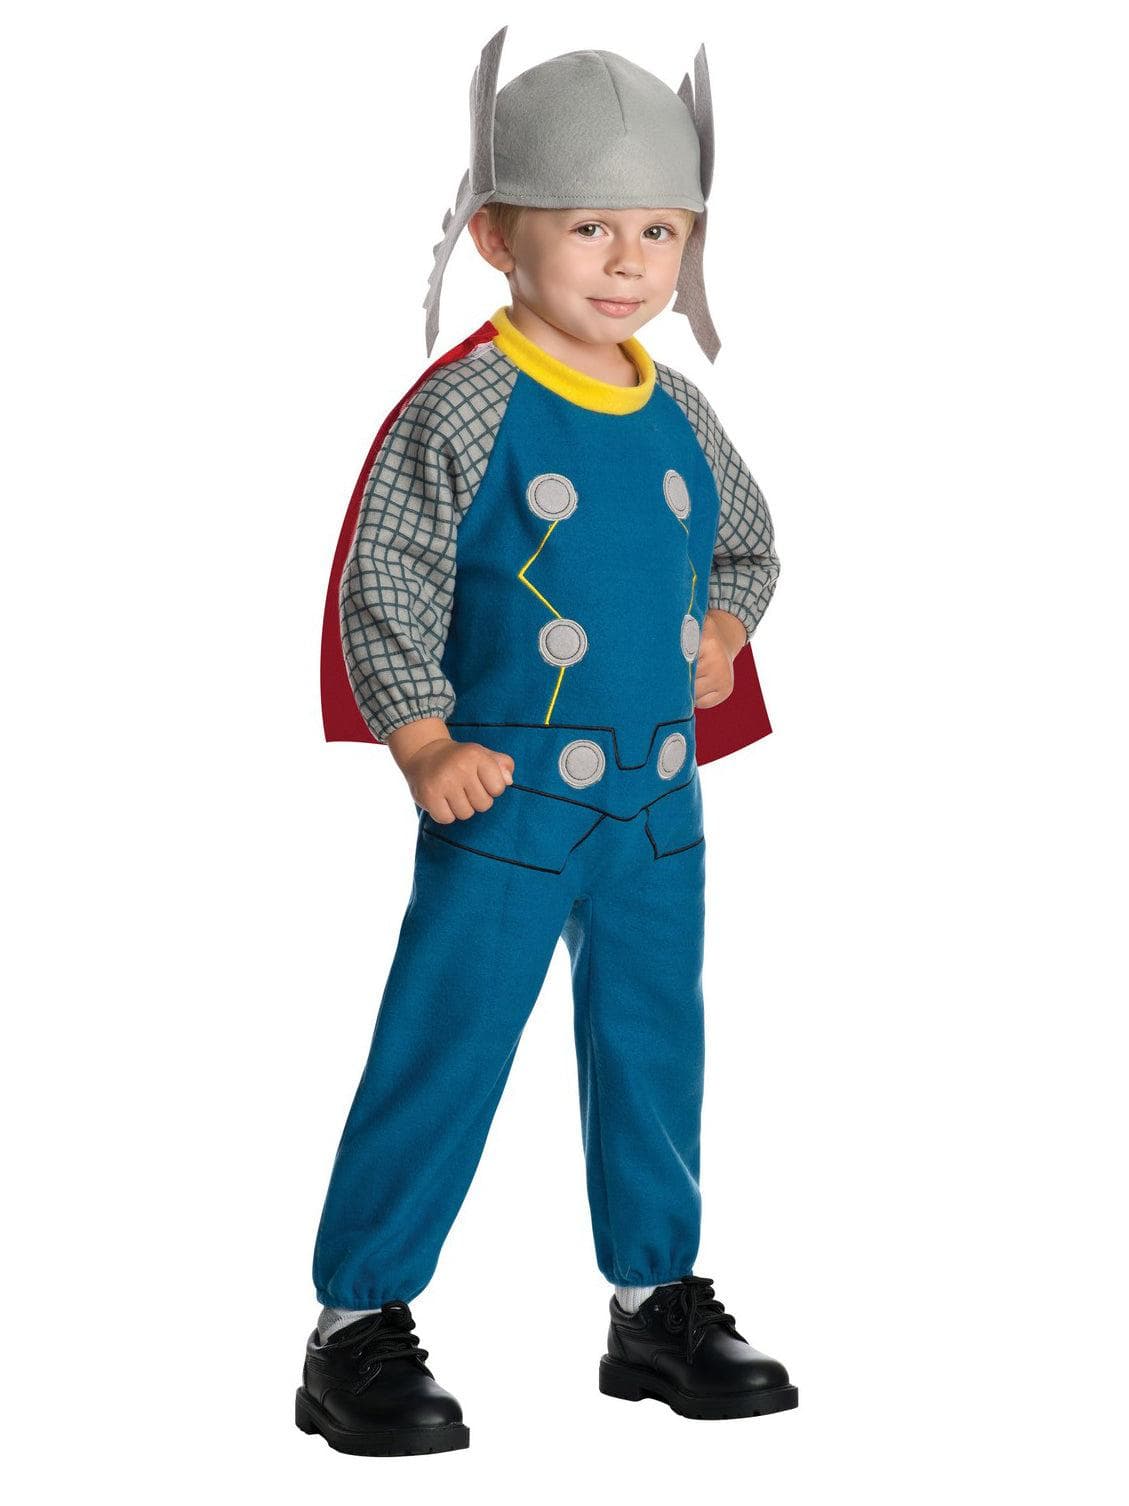 Thor Child Costume - costumes.com